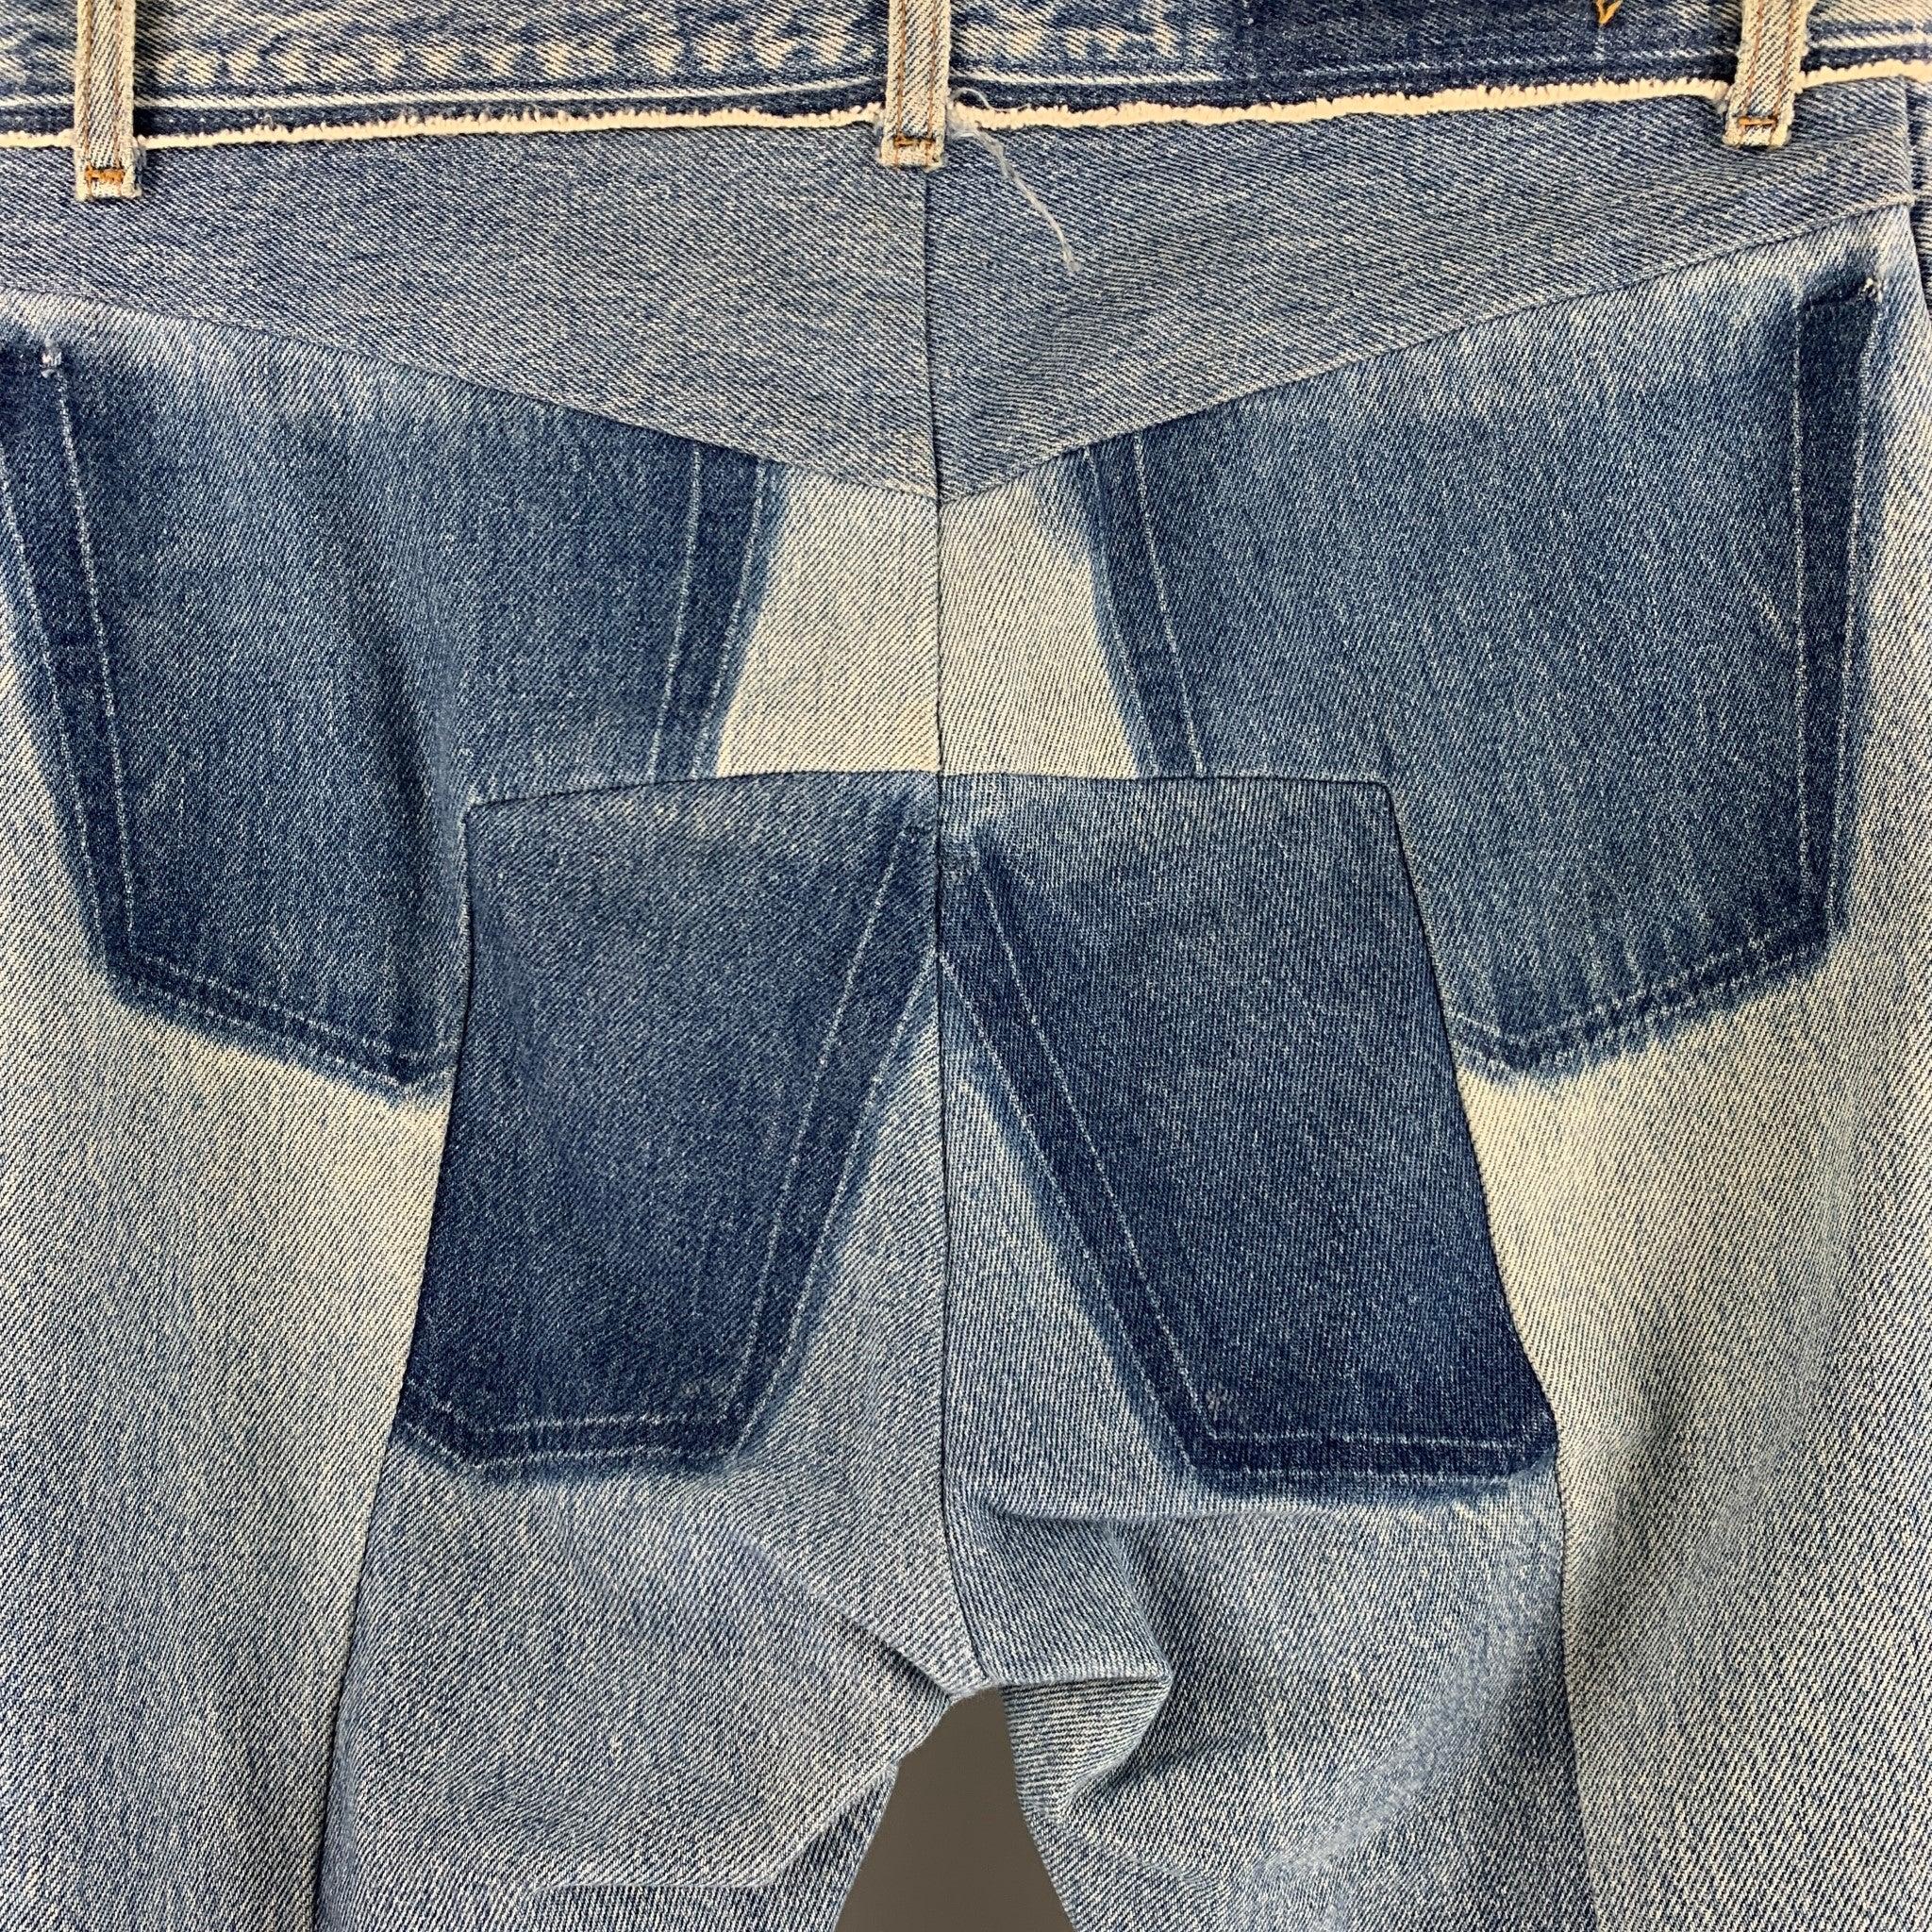 Men's VETEMENTS Size 30 Blue Distressed Cotton Button Fly Jeans